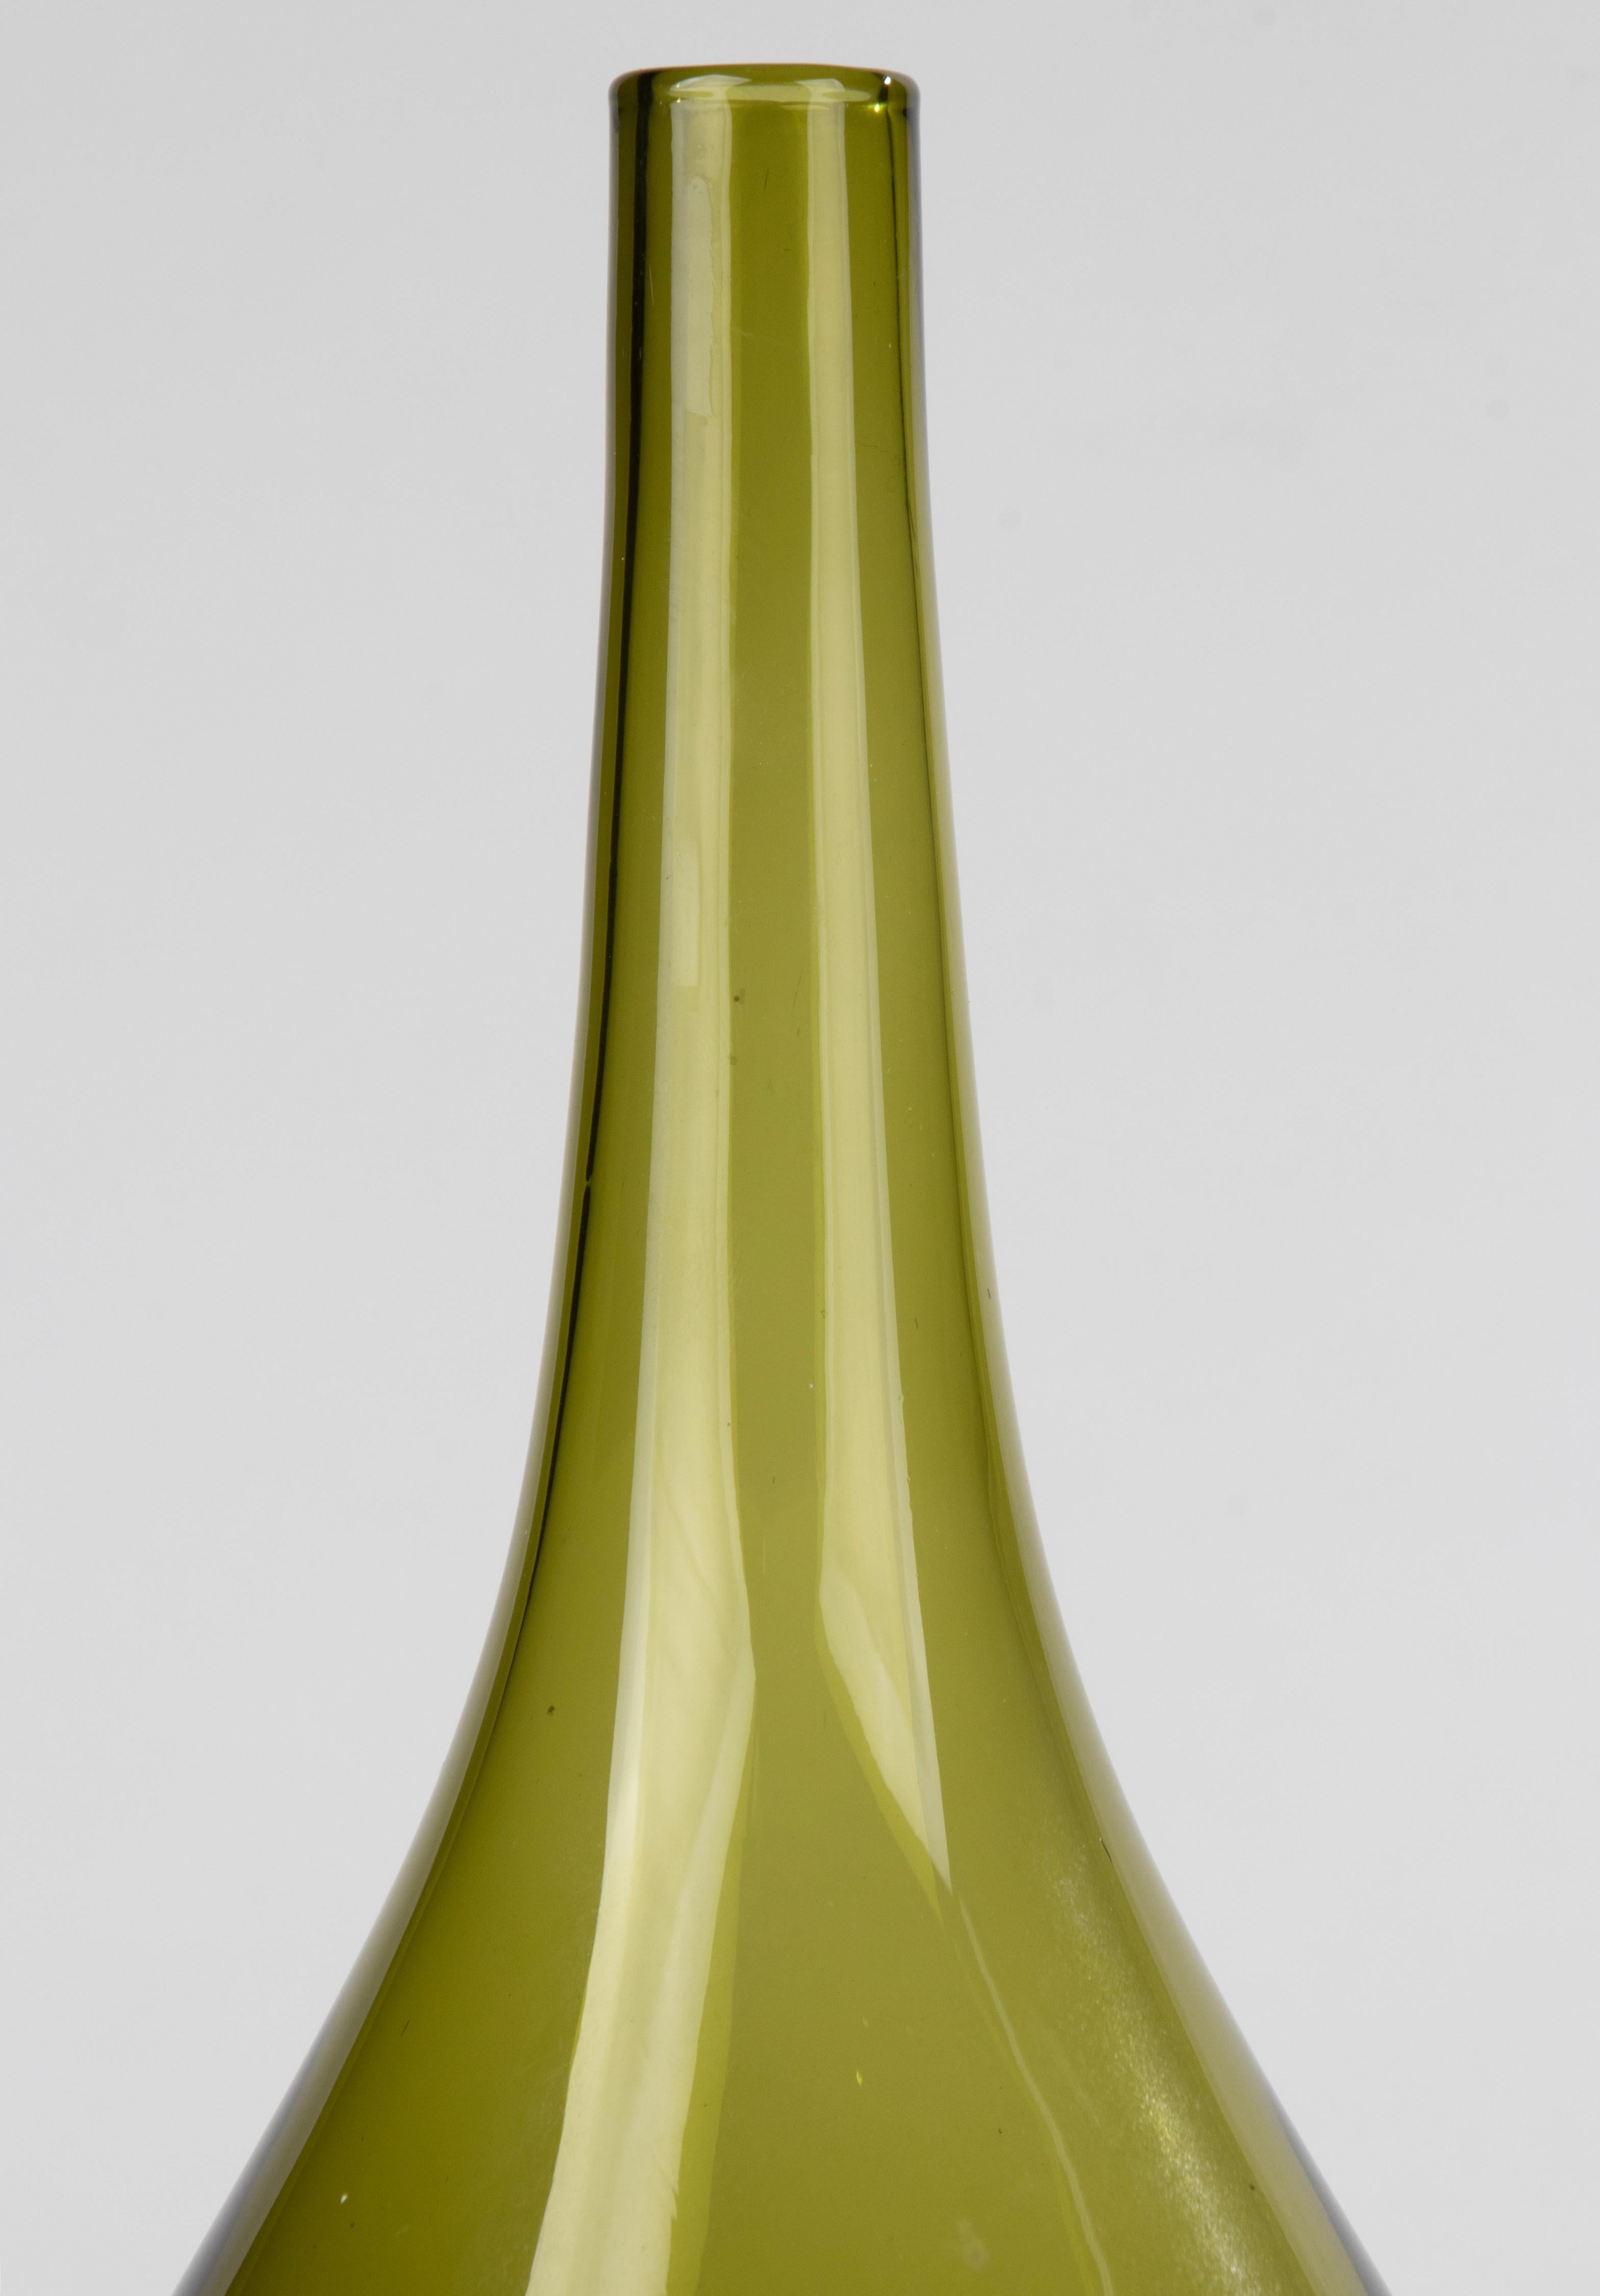 Magnifique vase en verre de Murano de couleur verte avec une base claire. Signé sur le fond 